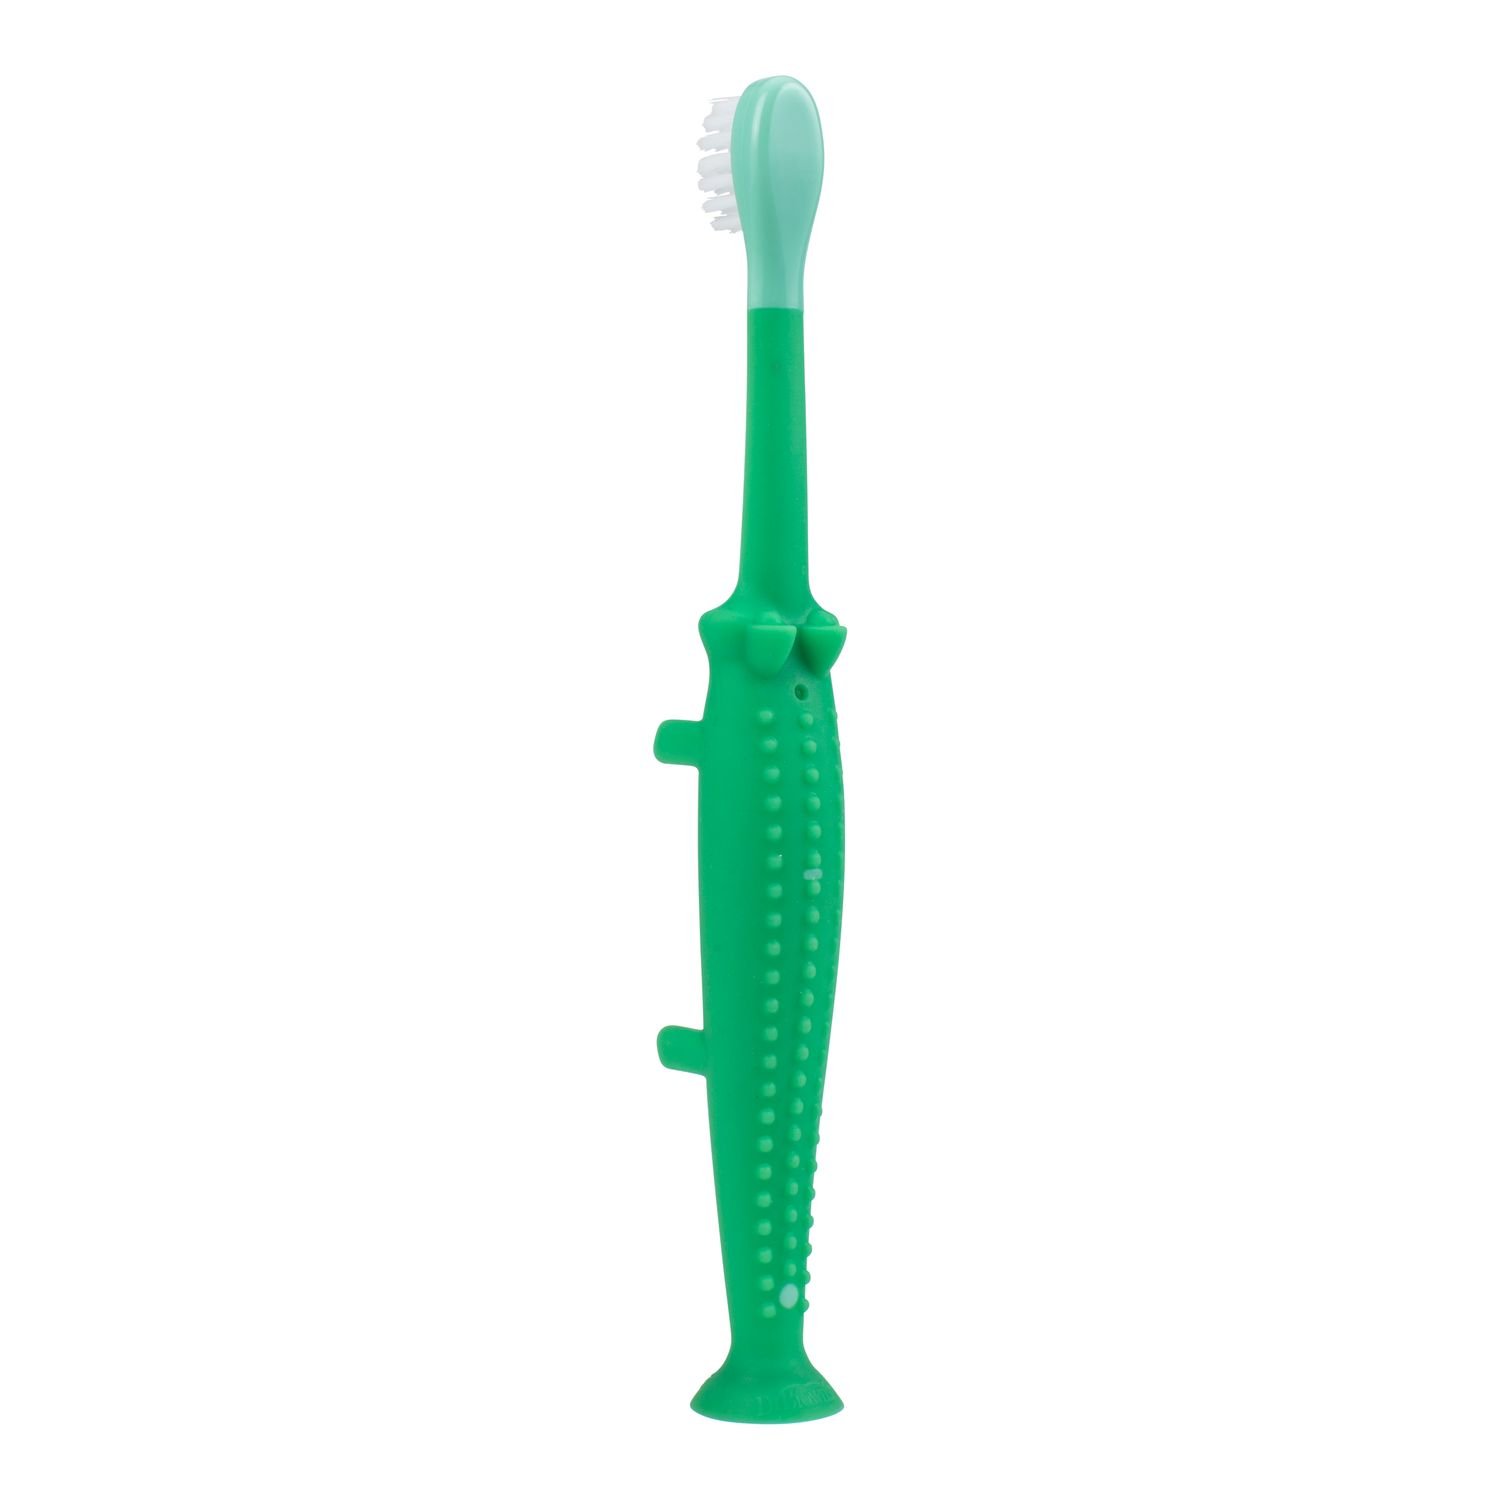 Зубная щётка для детей Dr. Brown's от 1 до 4 лет Крокодильчик зелёный